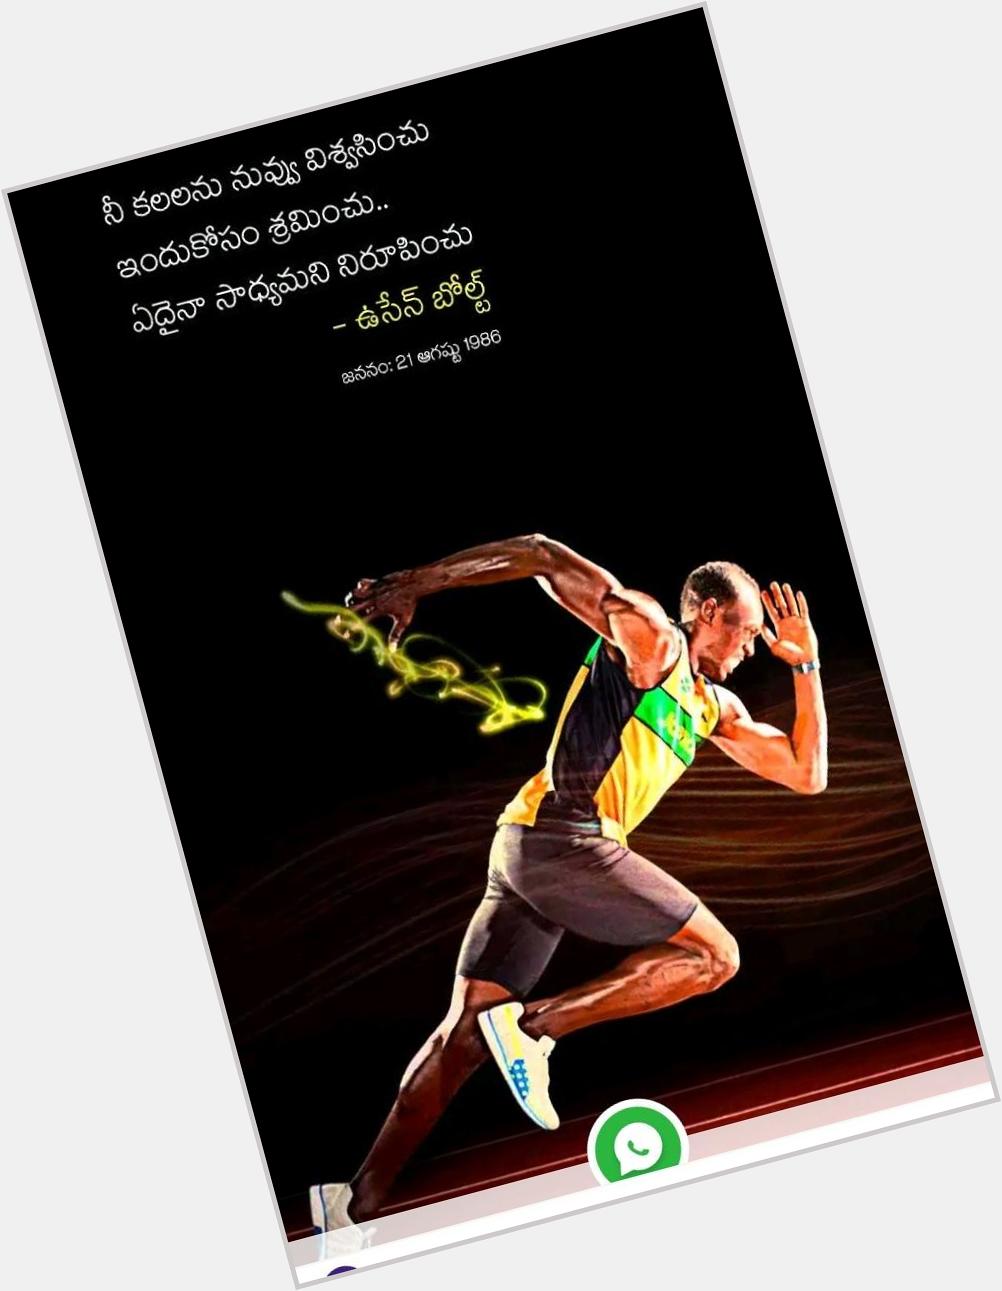 Happy birthday, Usain Bolt!  World fastest runner in best in the world . 